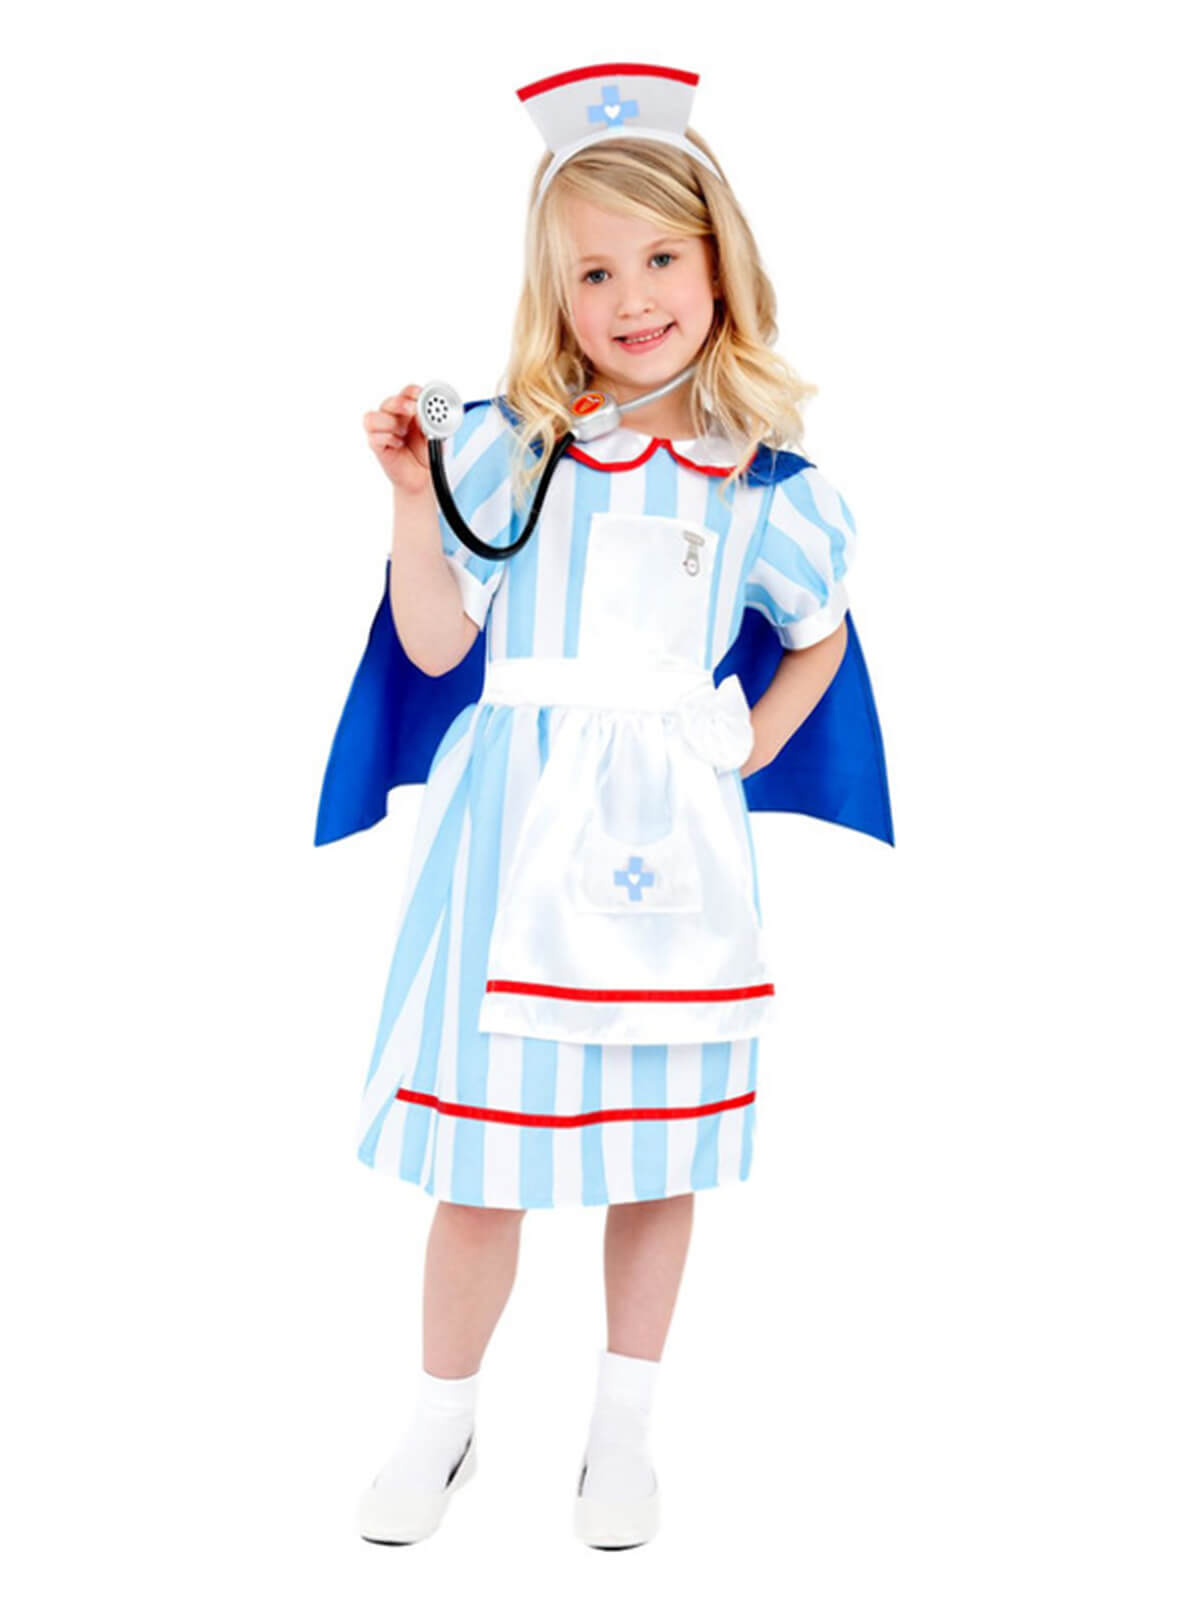 Vintage Nurse Costume, Blue